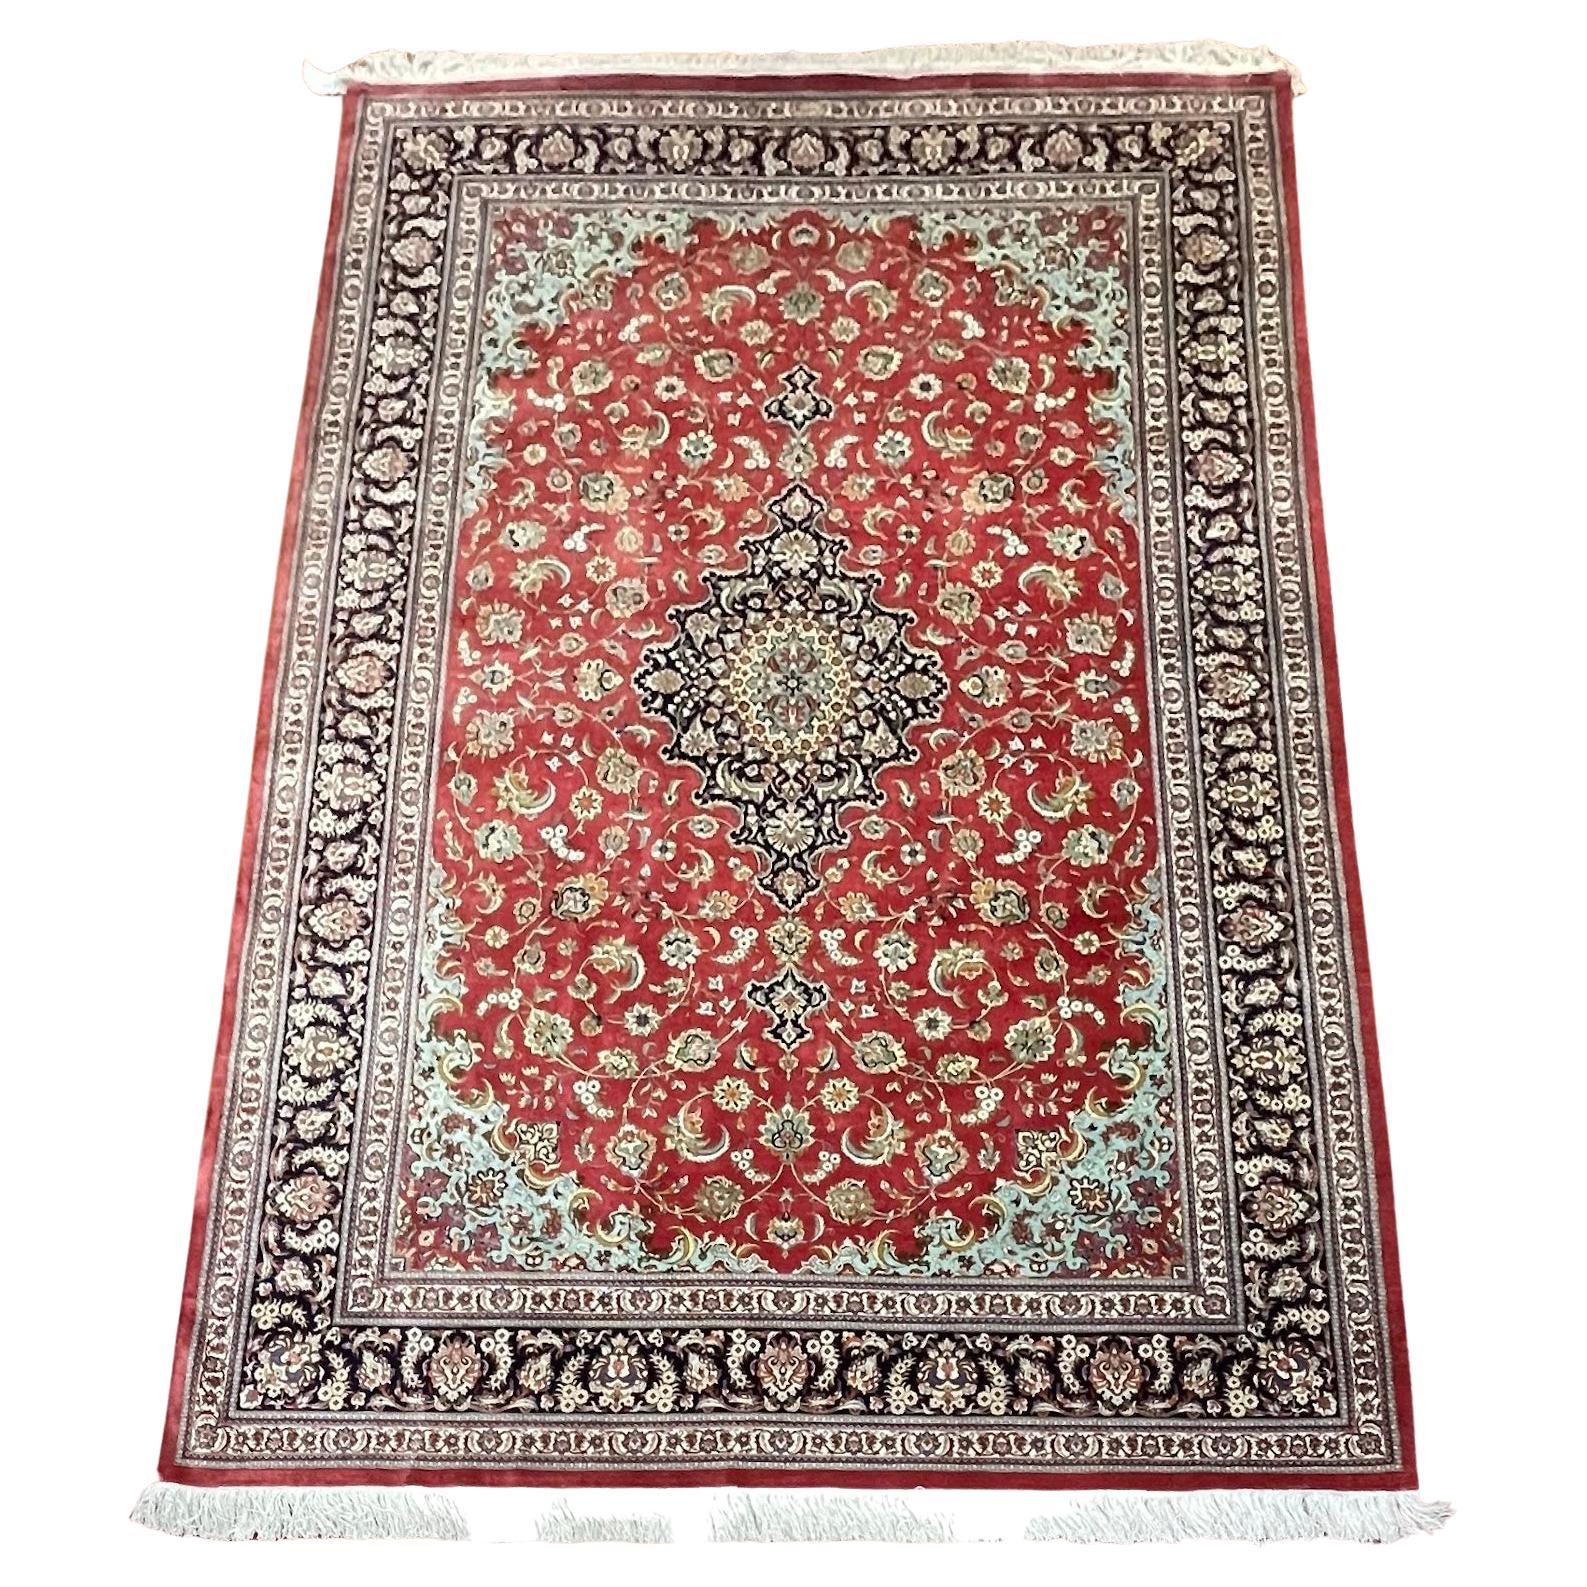 Tapis/Carpet en soie persane extrêmement raffiné